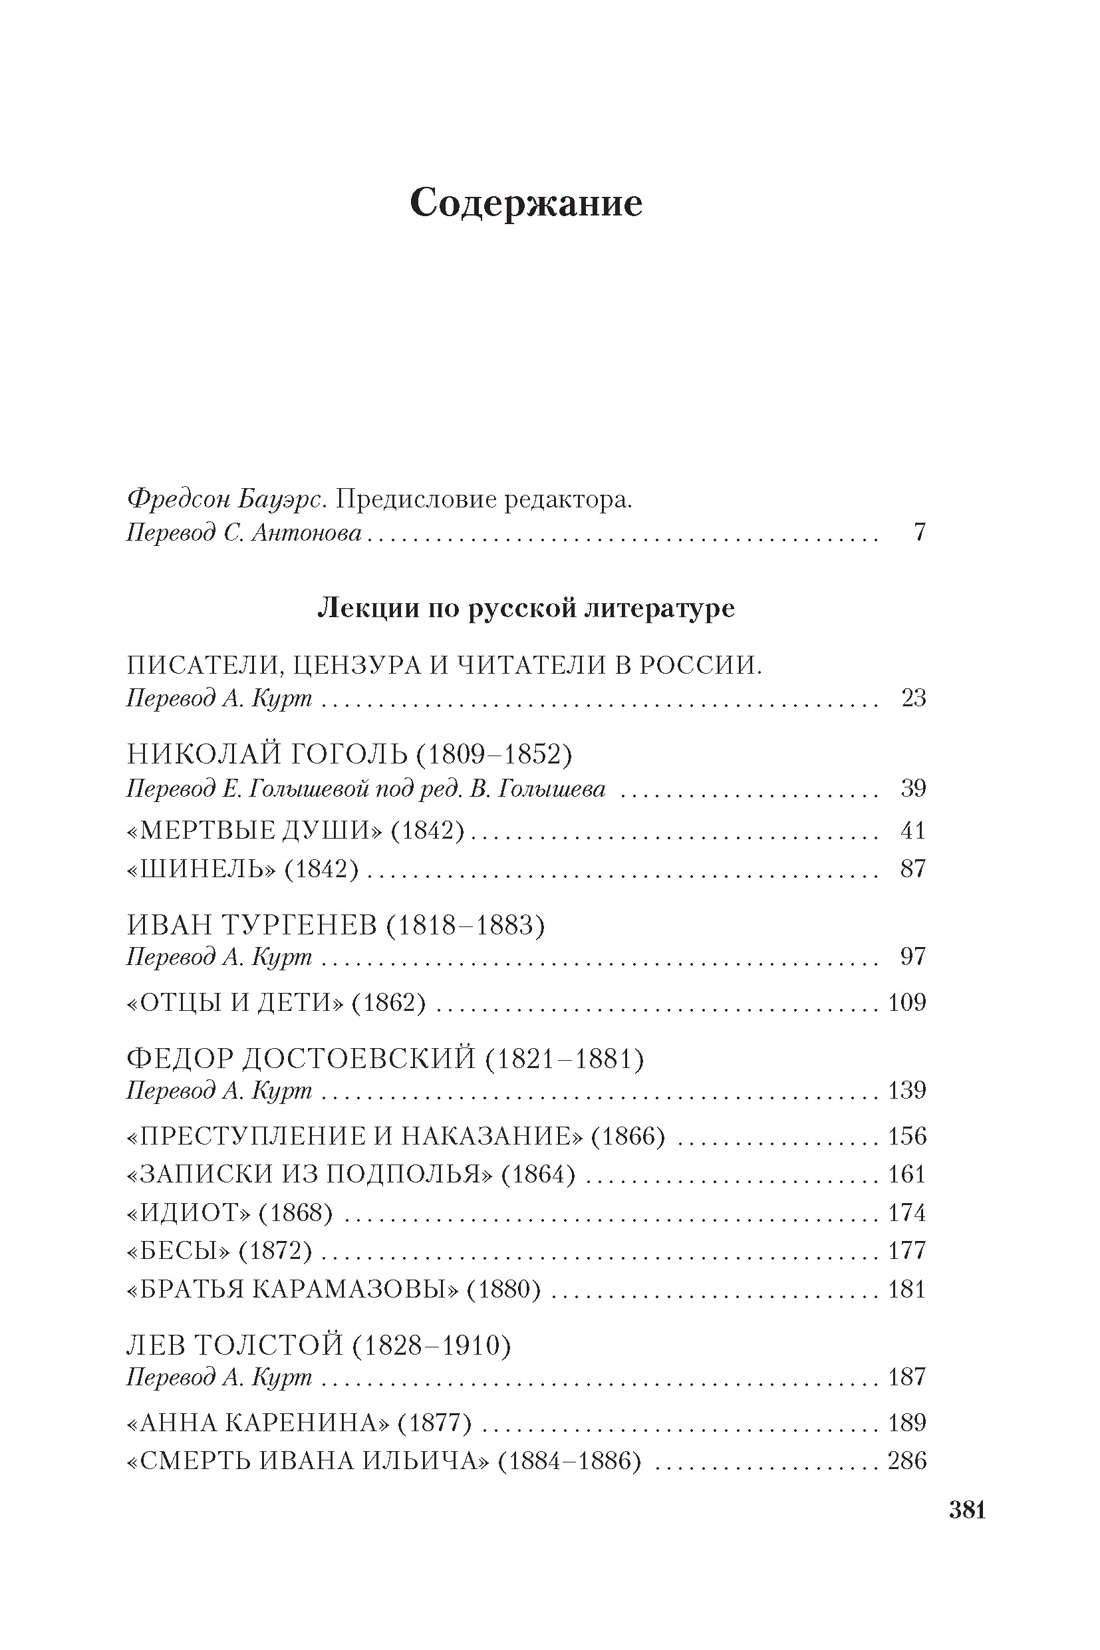 Лекции по русской литературе, Владимир Набоков